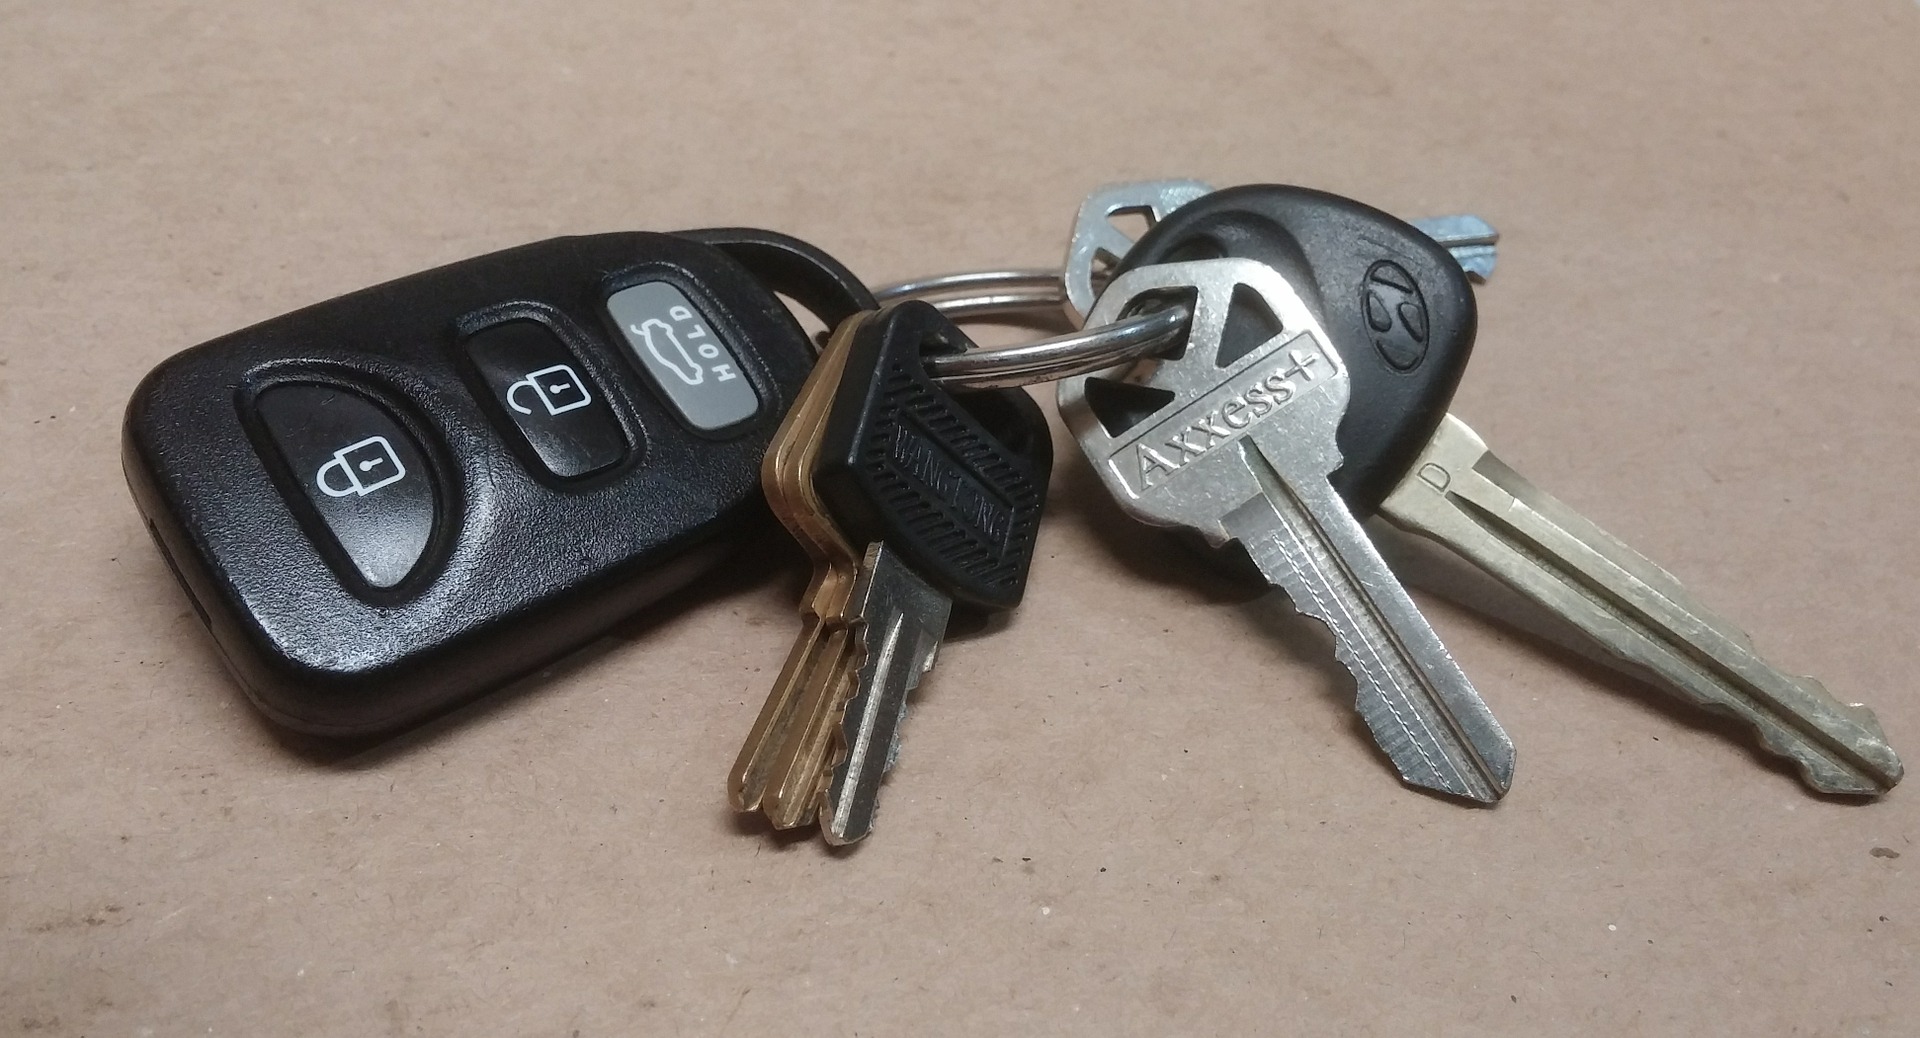 VW keys